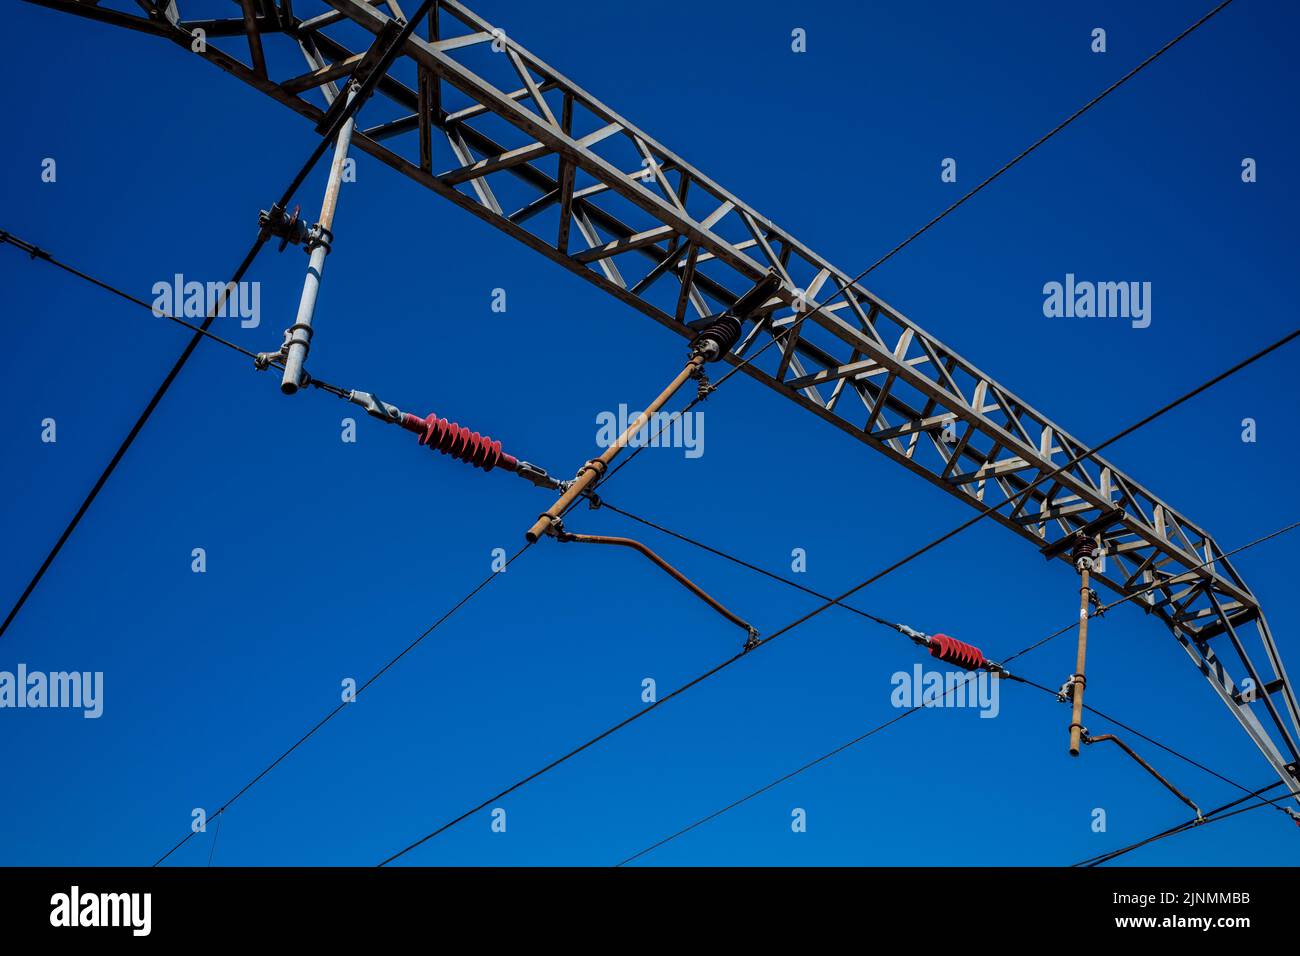 Overhead Cables UK Railways. Stromkabel für die Oberleitung von Eisenbahnstrecken in Großbritannien. UK Railways Overhead Power Cables. Stockfoto